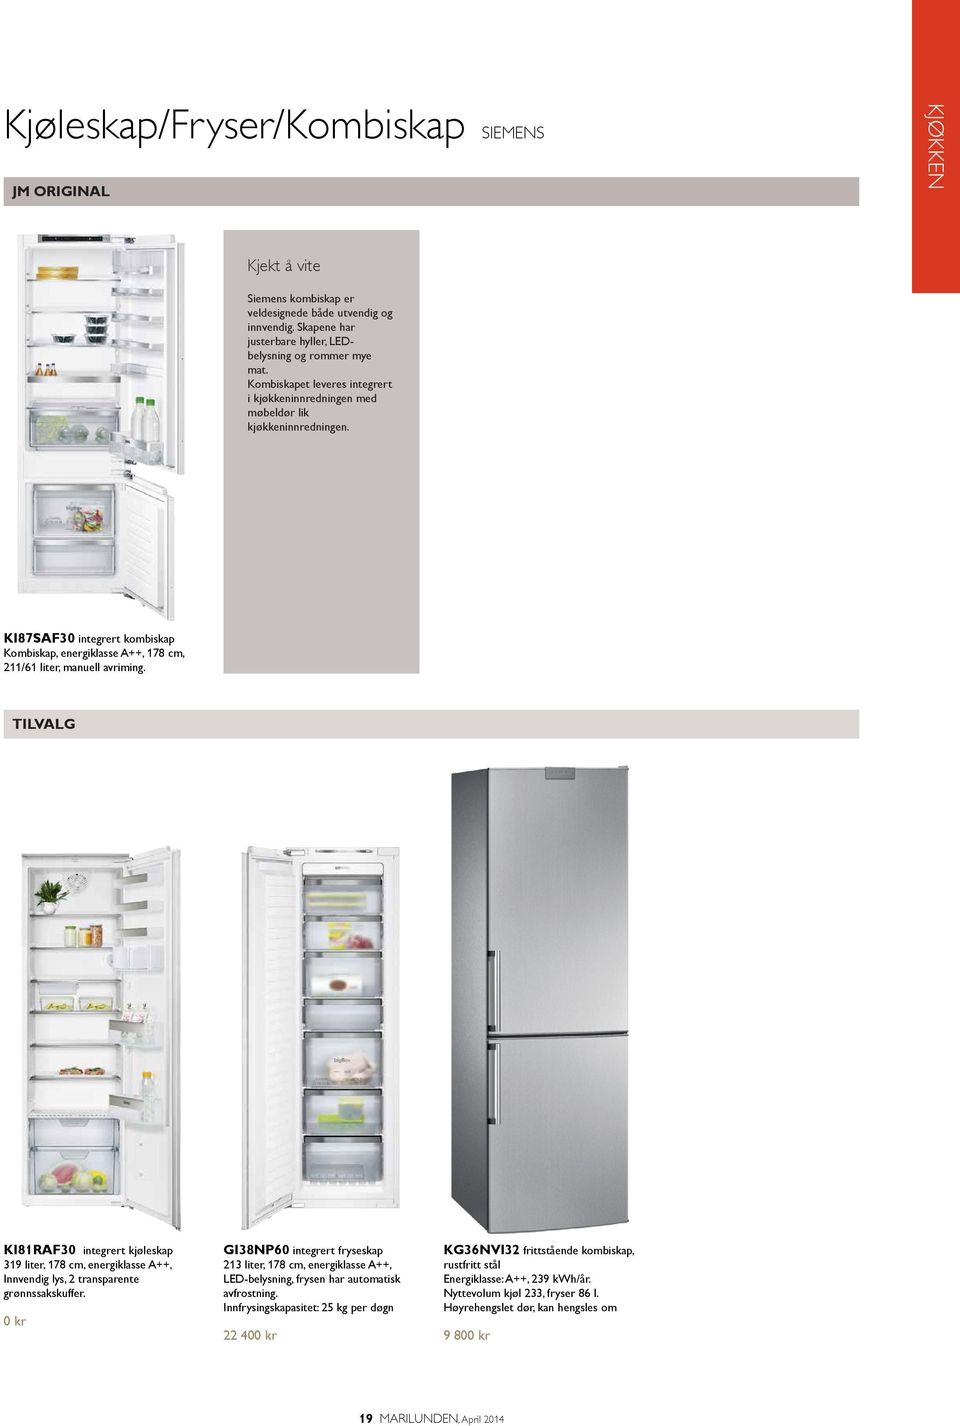 TILVALG KI81RAF30 integrert kjøleskap 319 liter, 178 cm, energiklasse A++, Innvendig lys, 2 transparente grønnssakskuffer.